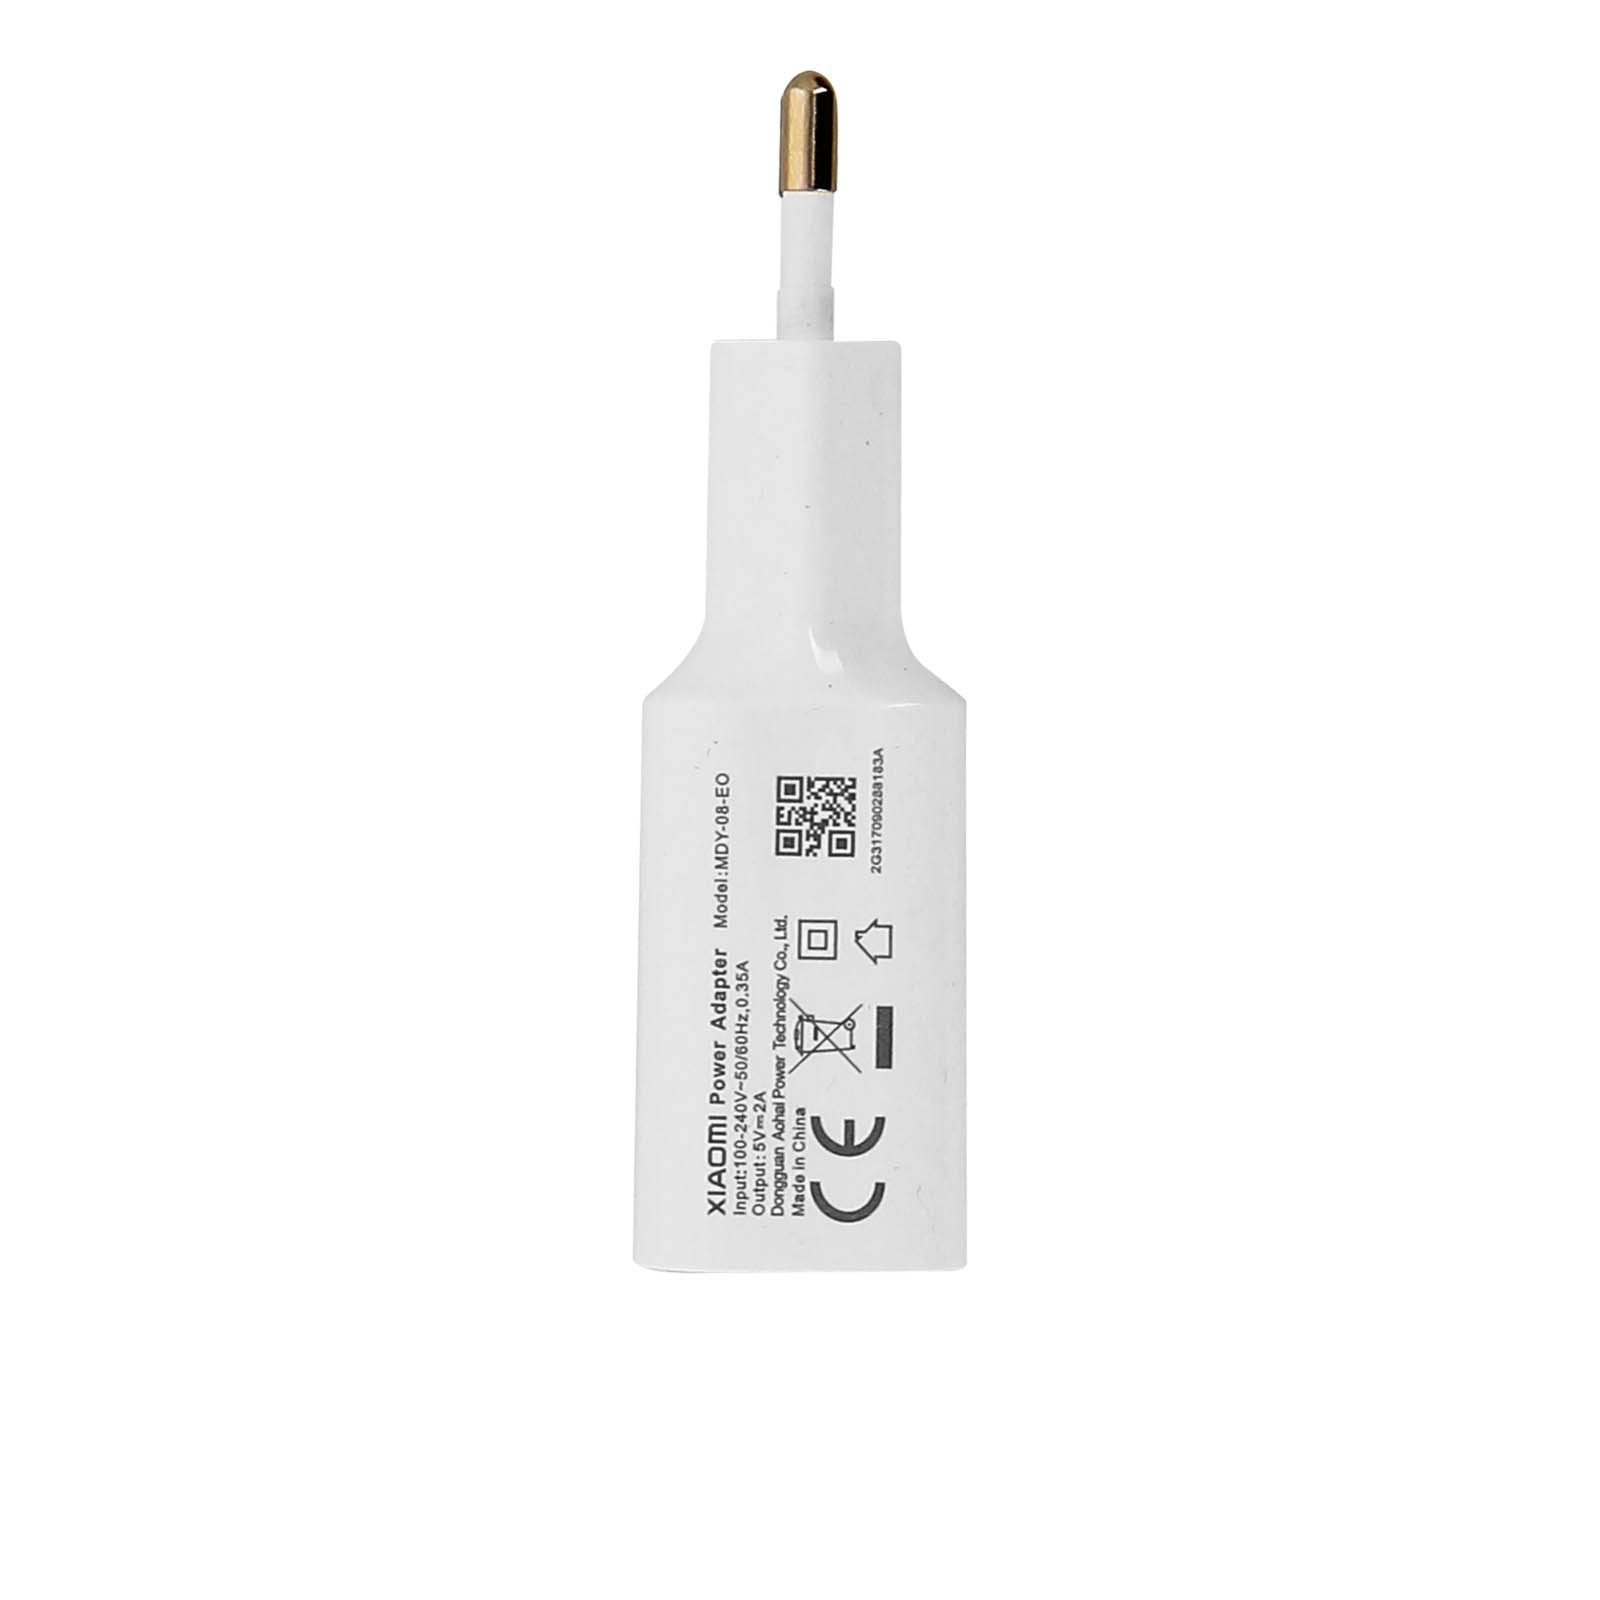 XIAOMI Netzteil, 2A USB Weiß Wand-Ladegerät Netzteile Xiaomi